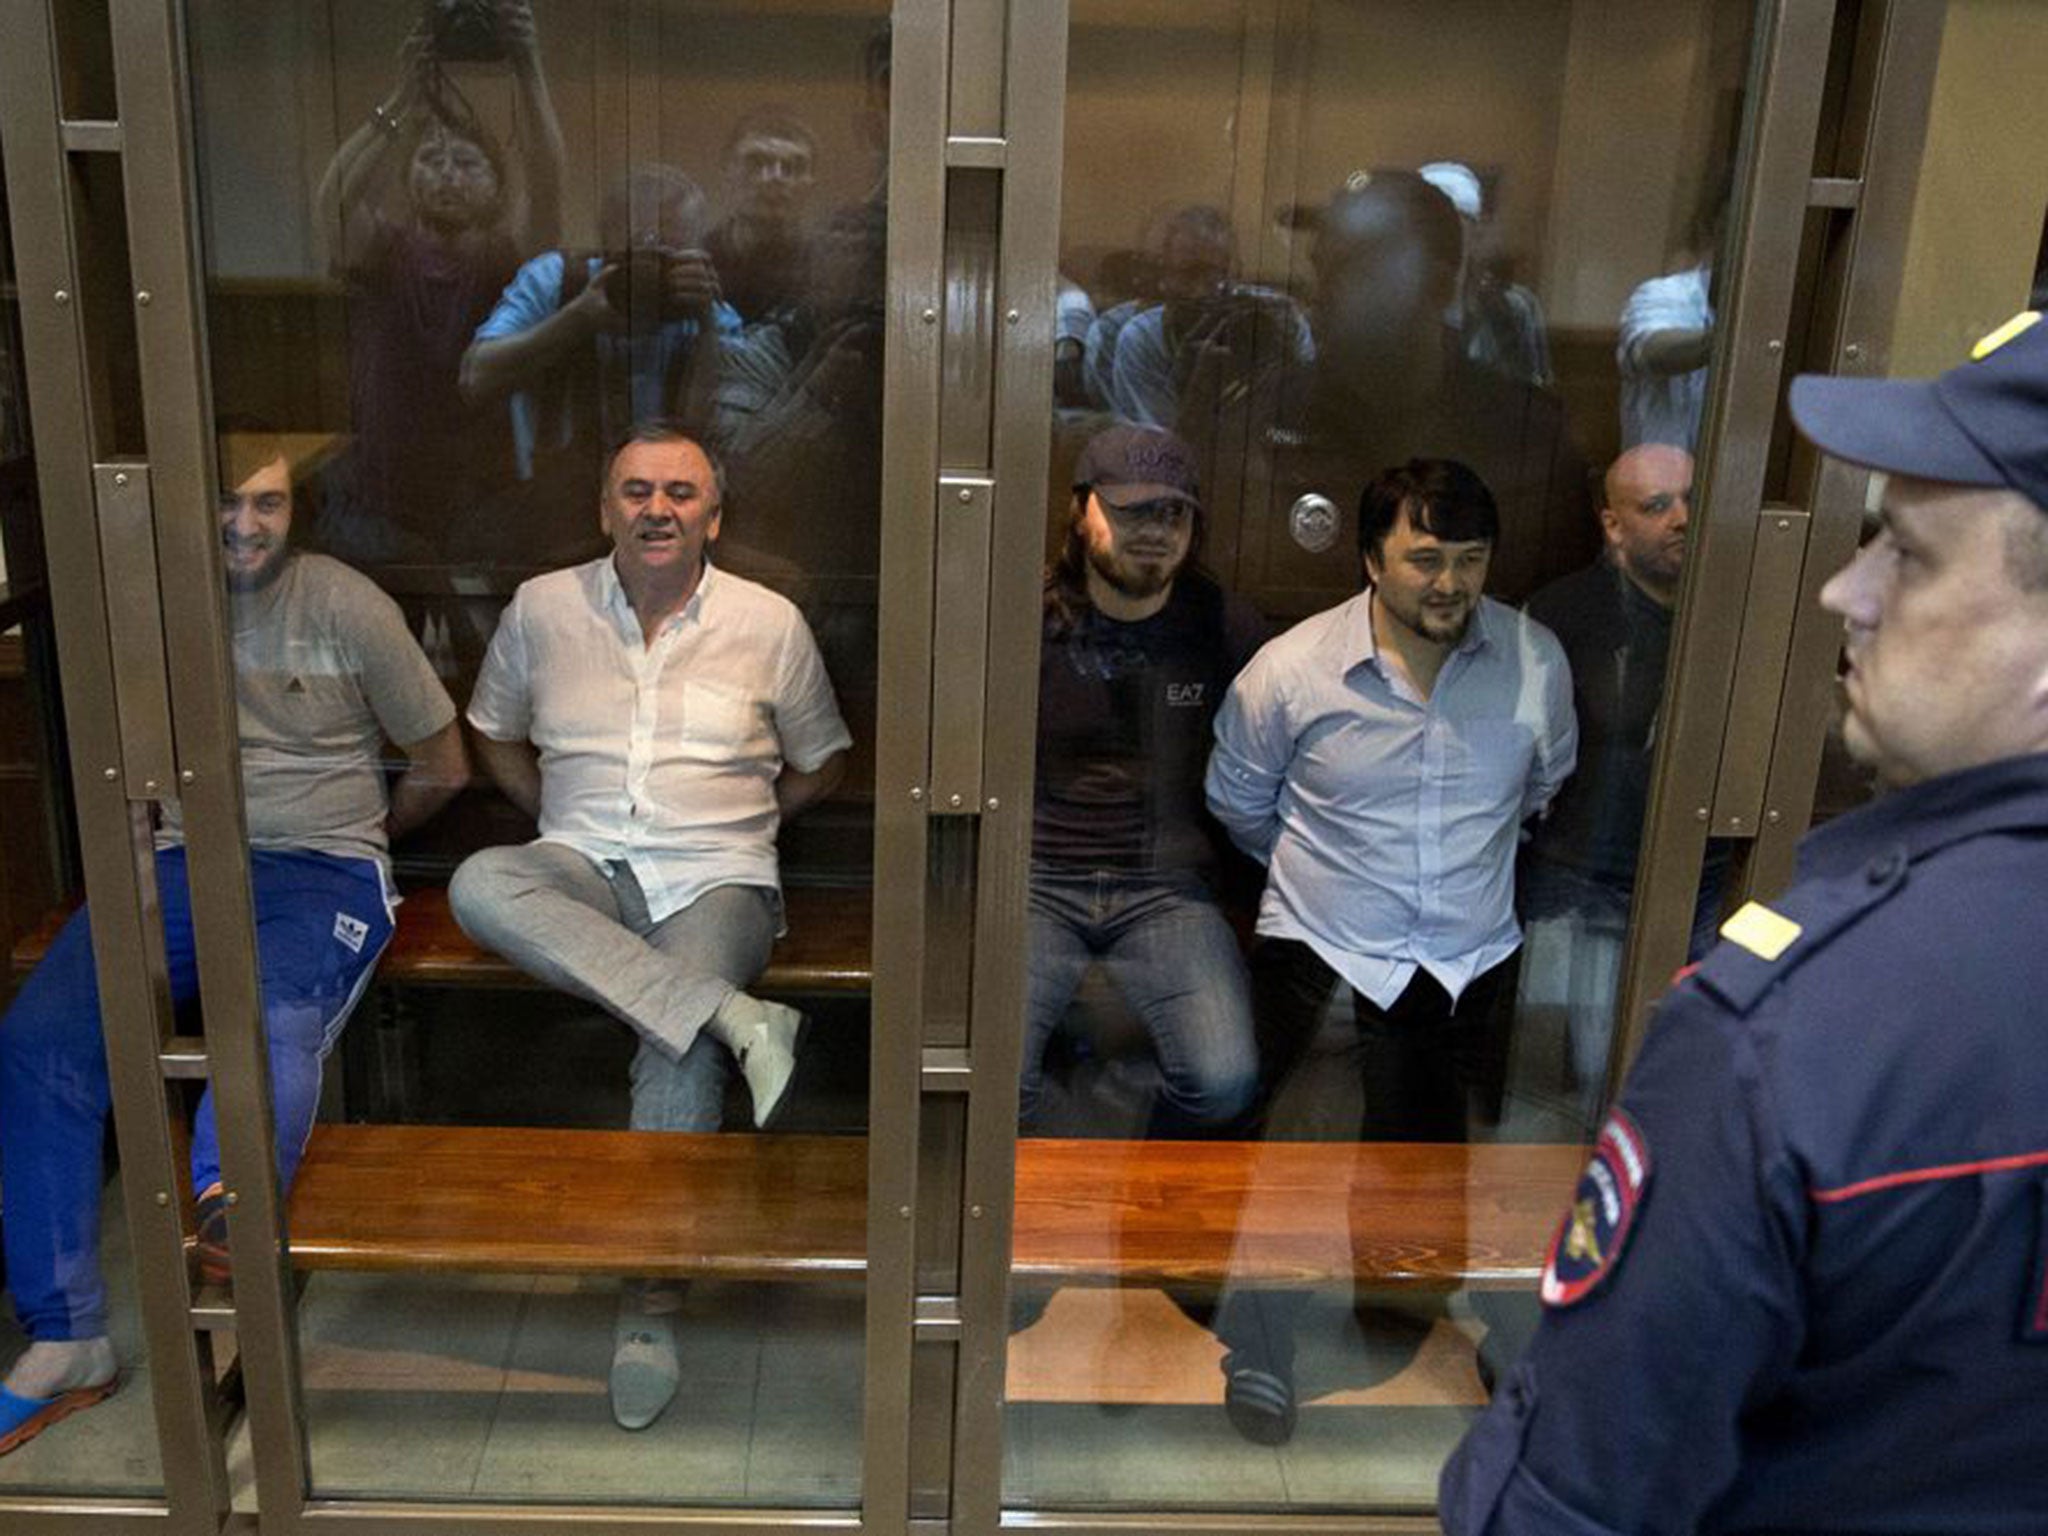 The five sentenced men (from left to right): Ibragim Makhmudov, Lom-Ali Gaitukayev, Dzhabrail Makhmudov, Rustam Makhmudov and Sergey Hadjikurbanov